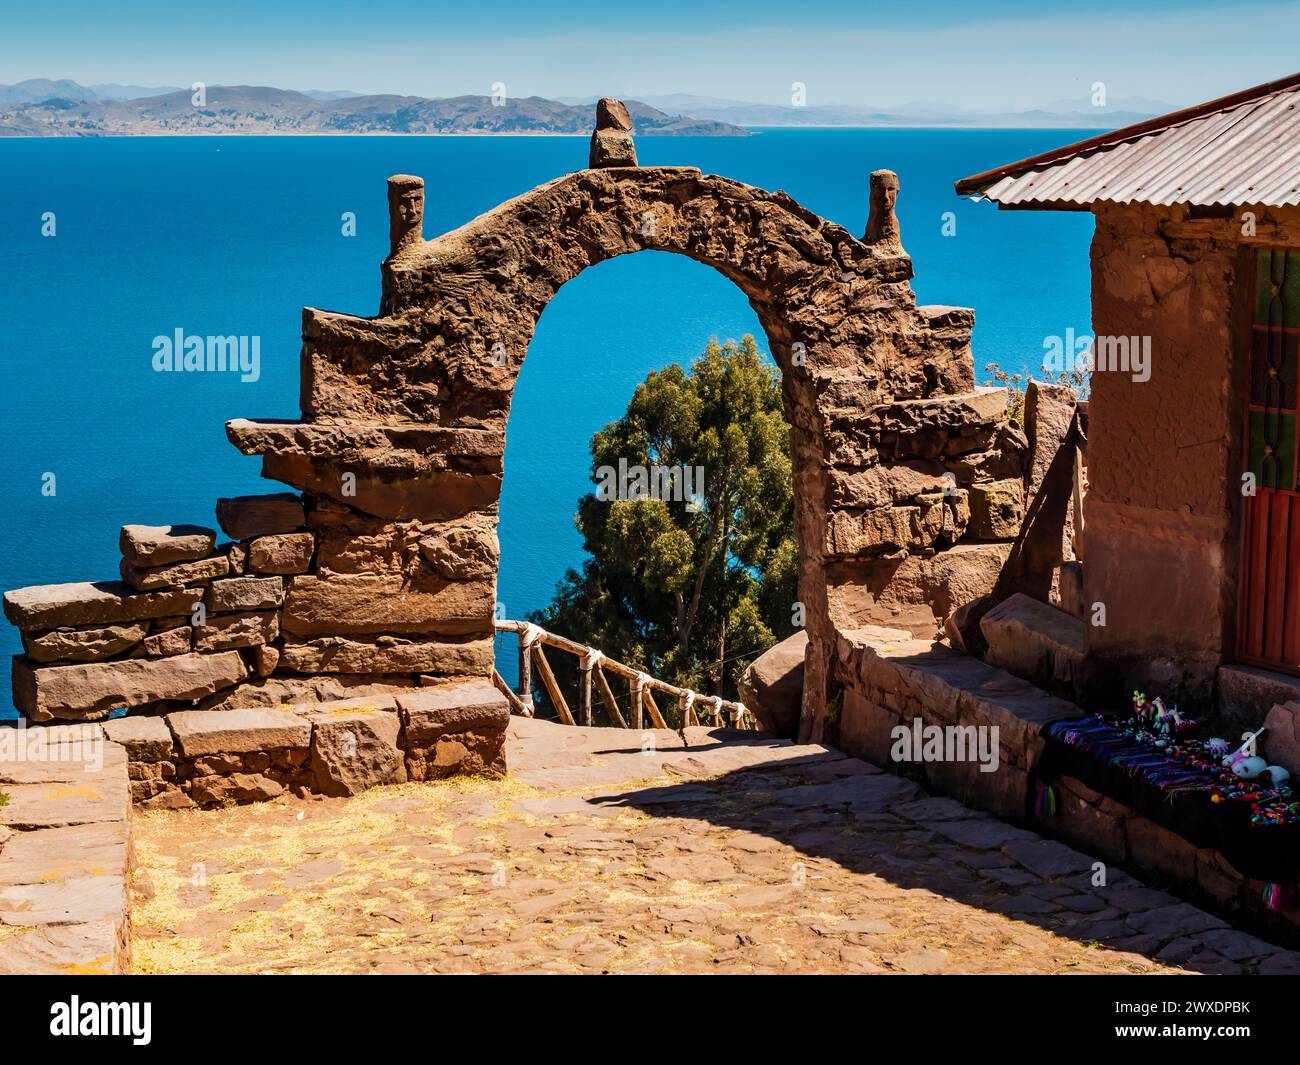 Paysage étonnant sur l'île de Taquile avec arche en pierre typique, lac Titicaca, région de Puno, Pérou Banque D'Images